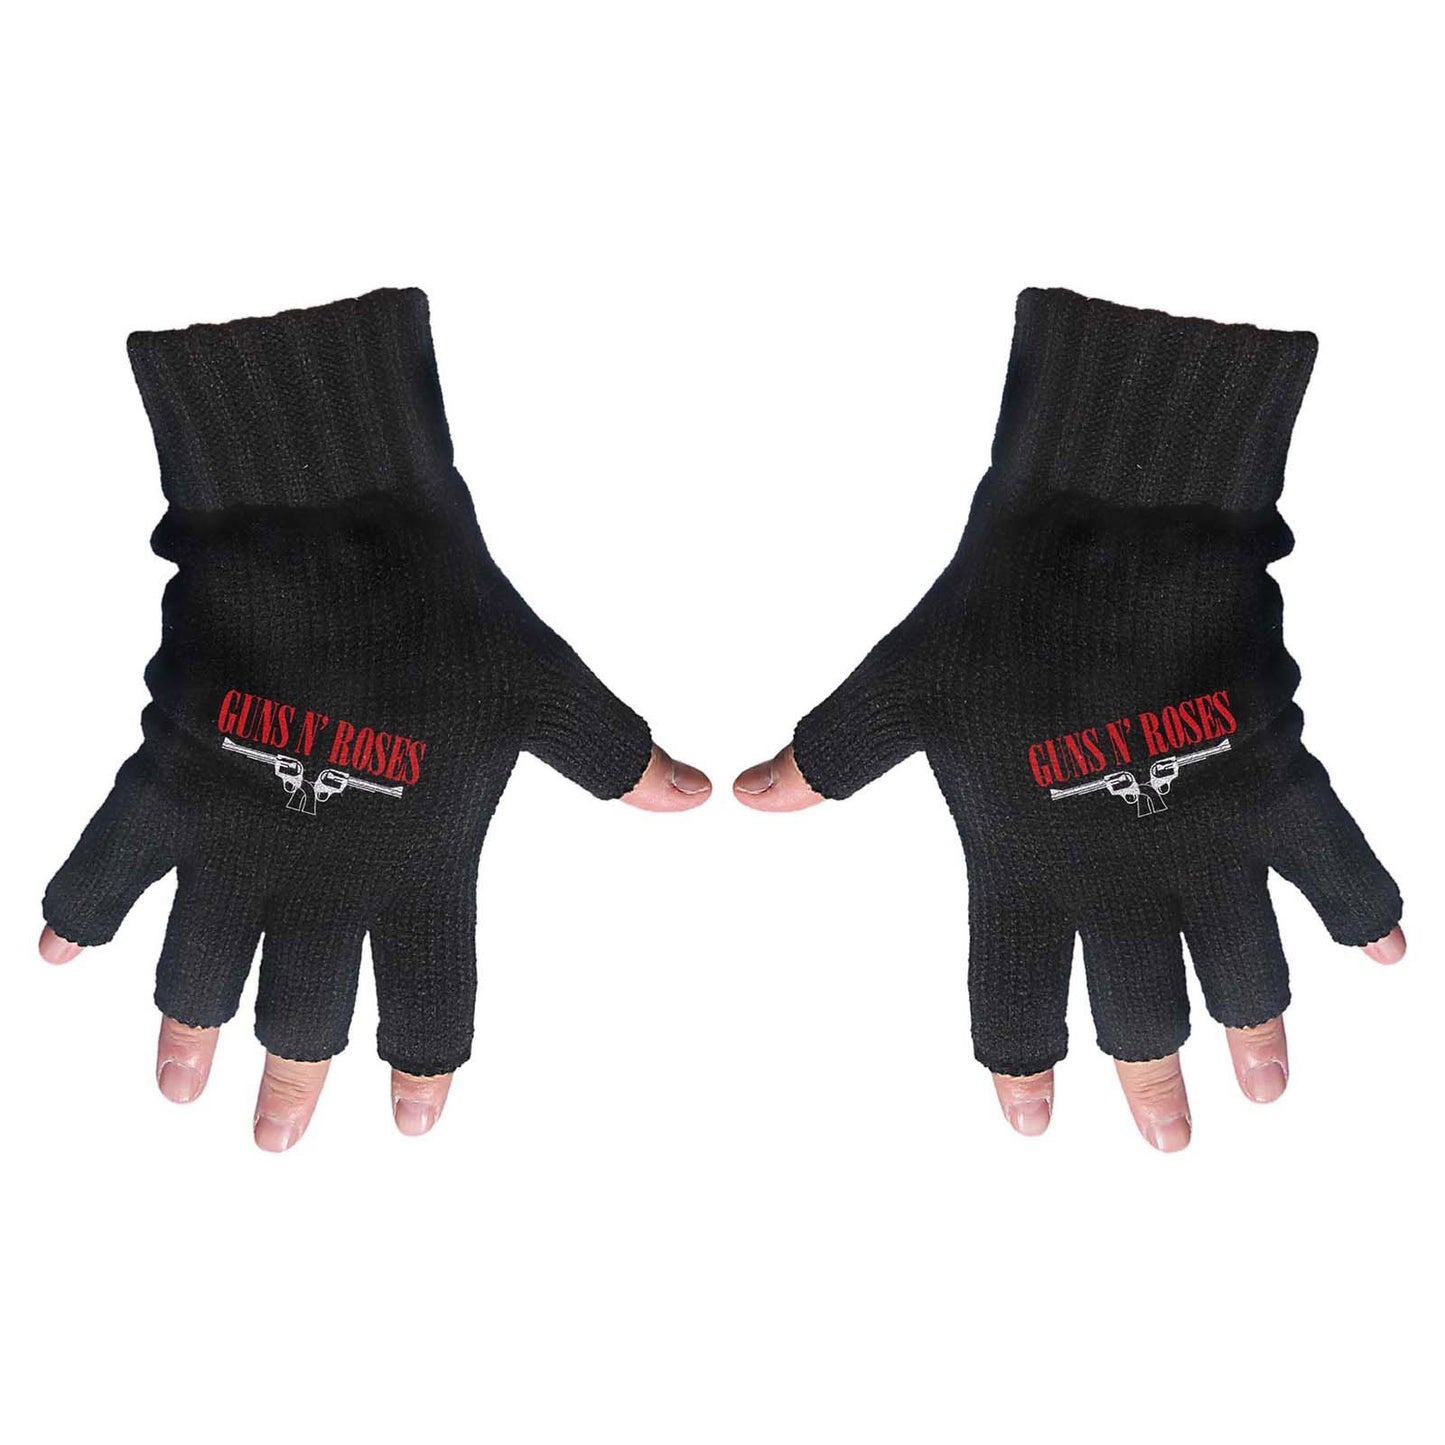 Guns N' Roses Unisex Fingerless Gloves: Logo & Pistols